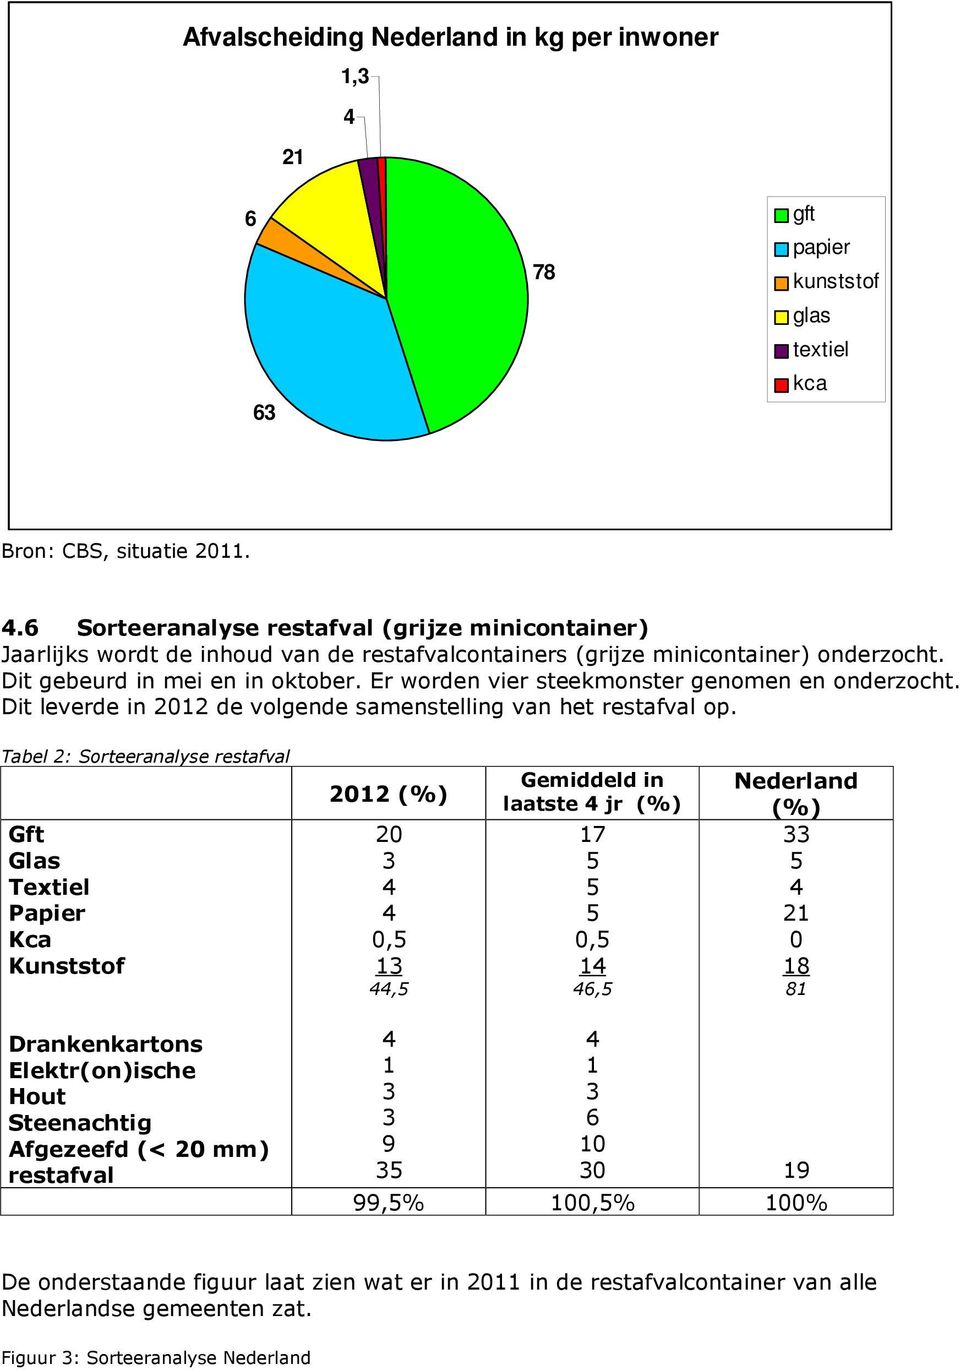 Tabel 2: Sorteeranalyse restafval Gft Glas Textiel Papier Kca Kunststof 2012 (%) 20 3 4 4 0,5 13 44,5 Gemiddeld in laatste 4 jr (%) 17 5 5 5 0,5 14 46,5 Nederland (%) 33 5 4 21 0 18 81 Drankenkartons